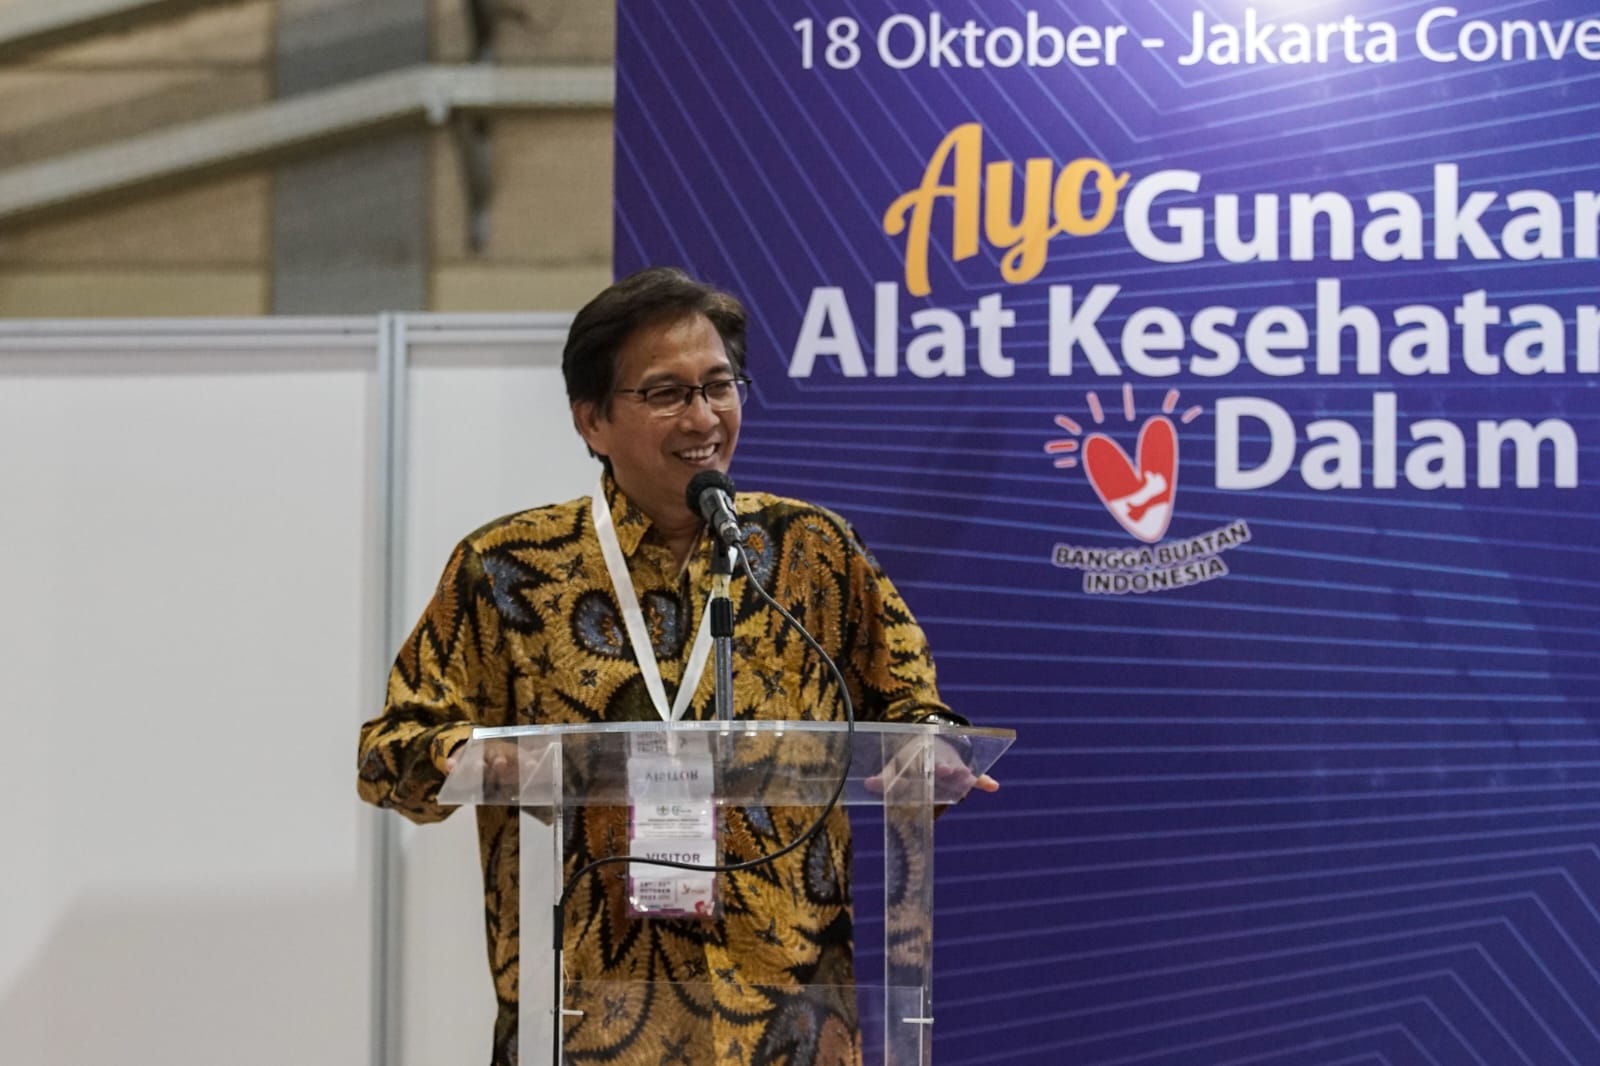 Gambar Rektor ITS Prof Dr Ir Mochamad Ashari MEng saat memberikan sambutan pada peluncuran Produk Alat Kesehatan Indonesia karya ITS di Jakarta